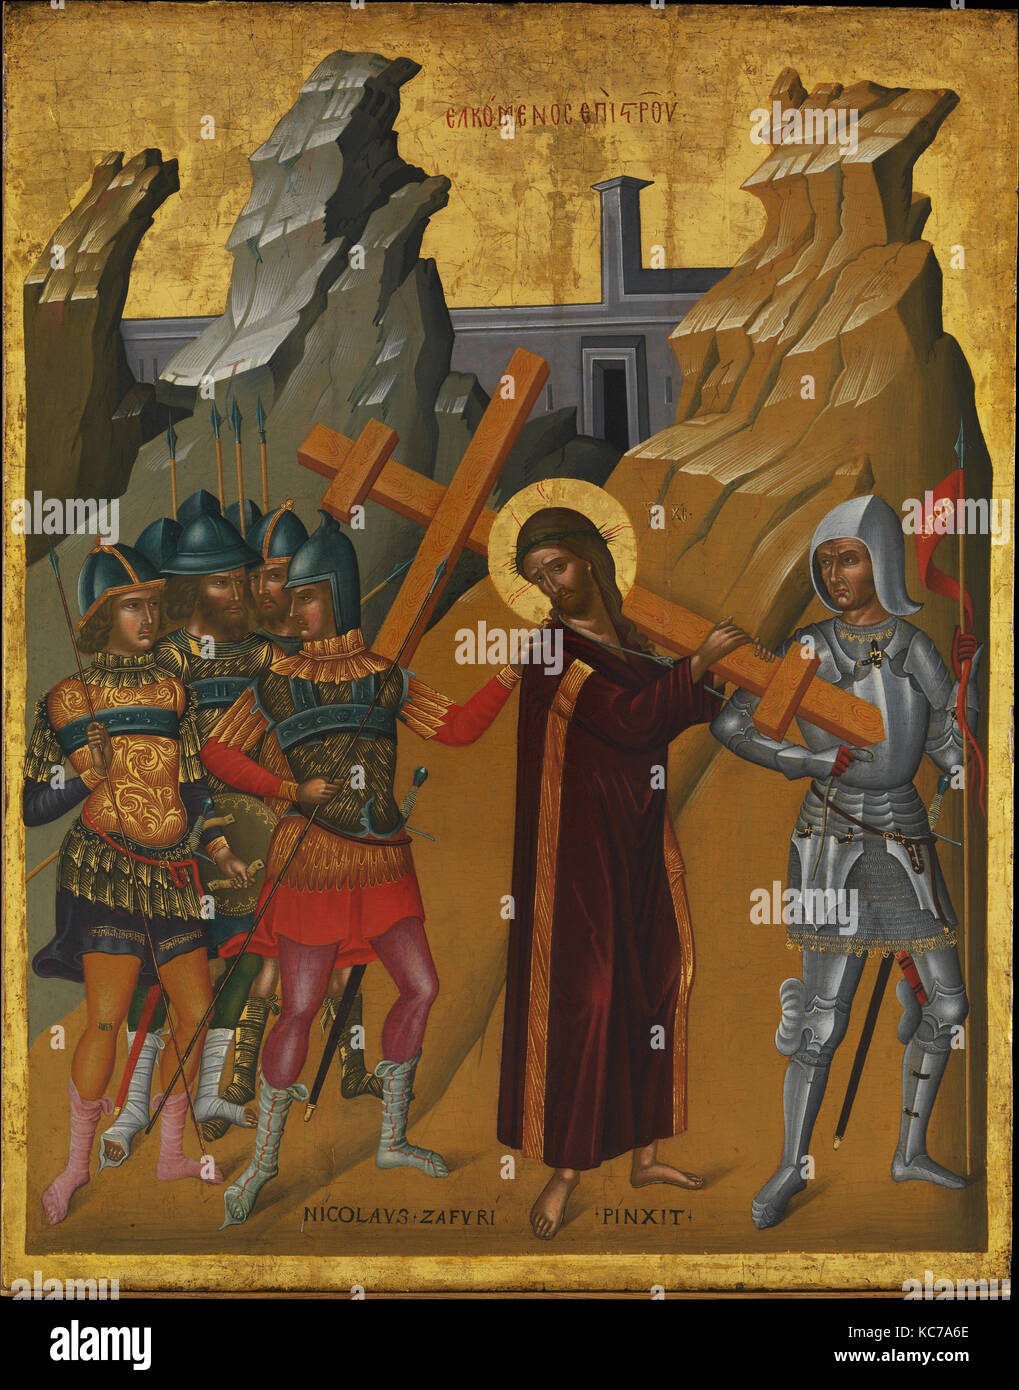 Cristo portacroce, olio e tempera su legno, oro, 27 1/4 x 21 1/2 in. (69,2 x 54,6 cm), dipinti, Nicolaos Foto Stock